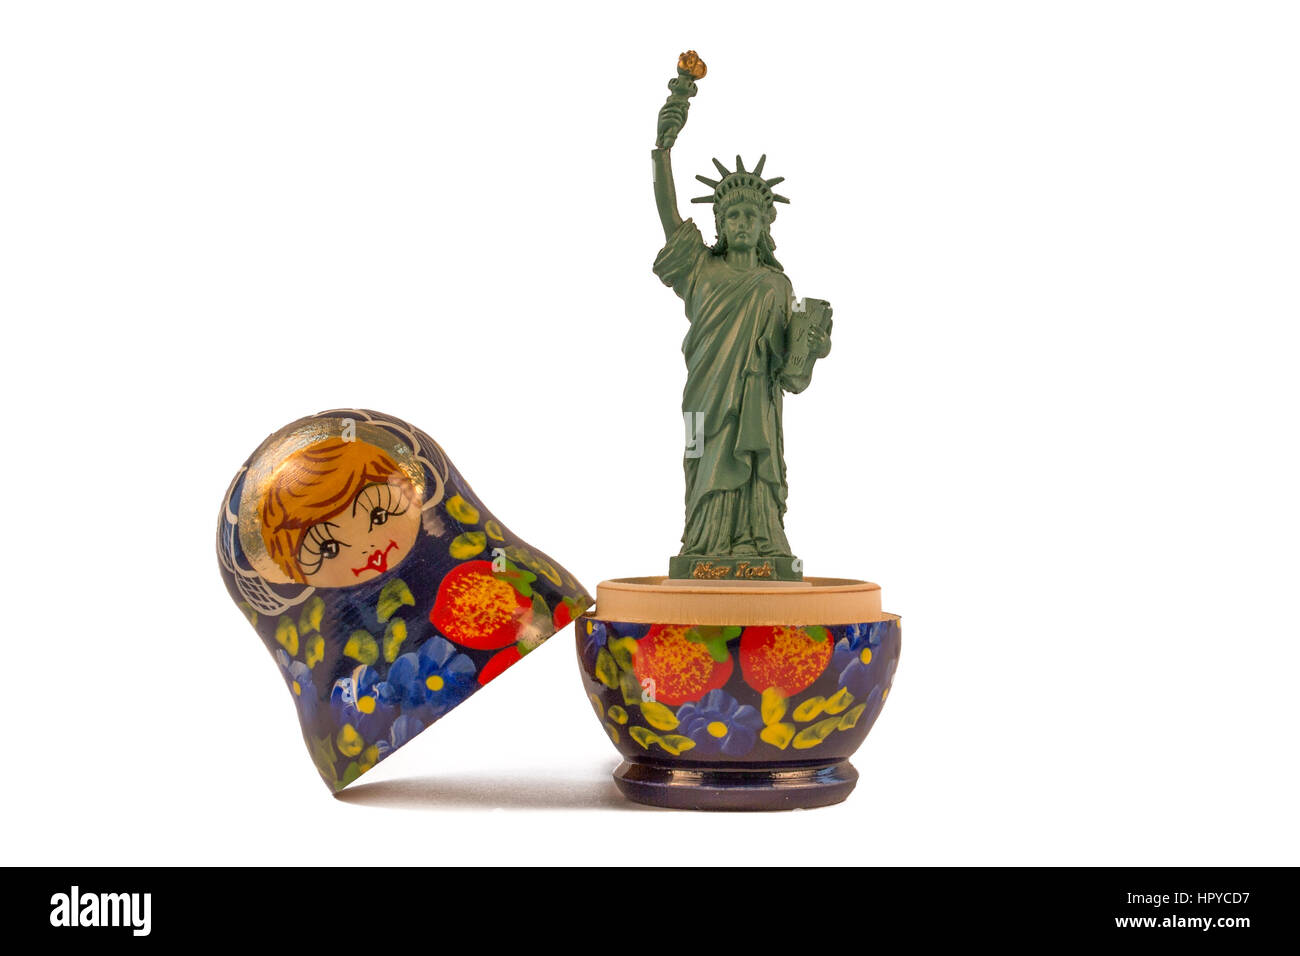 Modell der amerikanischen Freiheitsstatue innerhalb einer russischen Matrjoschka (oder babuschka Puppe) - Weißer Hintergrund Stockfoto